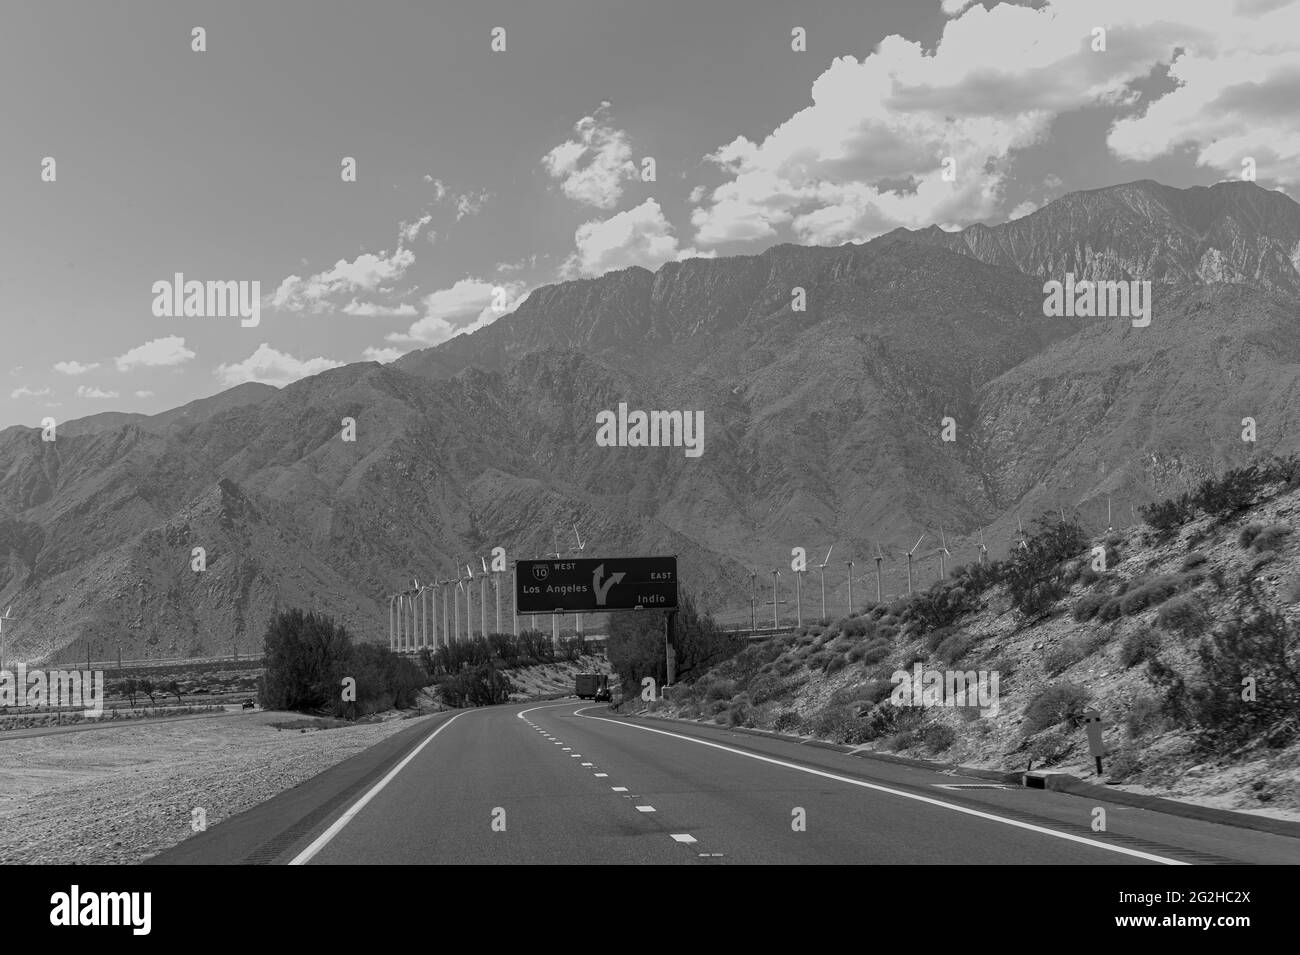 Auf der Straße/Autobahn in Kalifornien - mit spektakulärer Aussicht. Genaue Position siehe unten Stockfoto